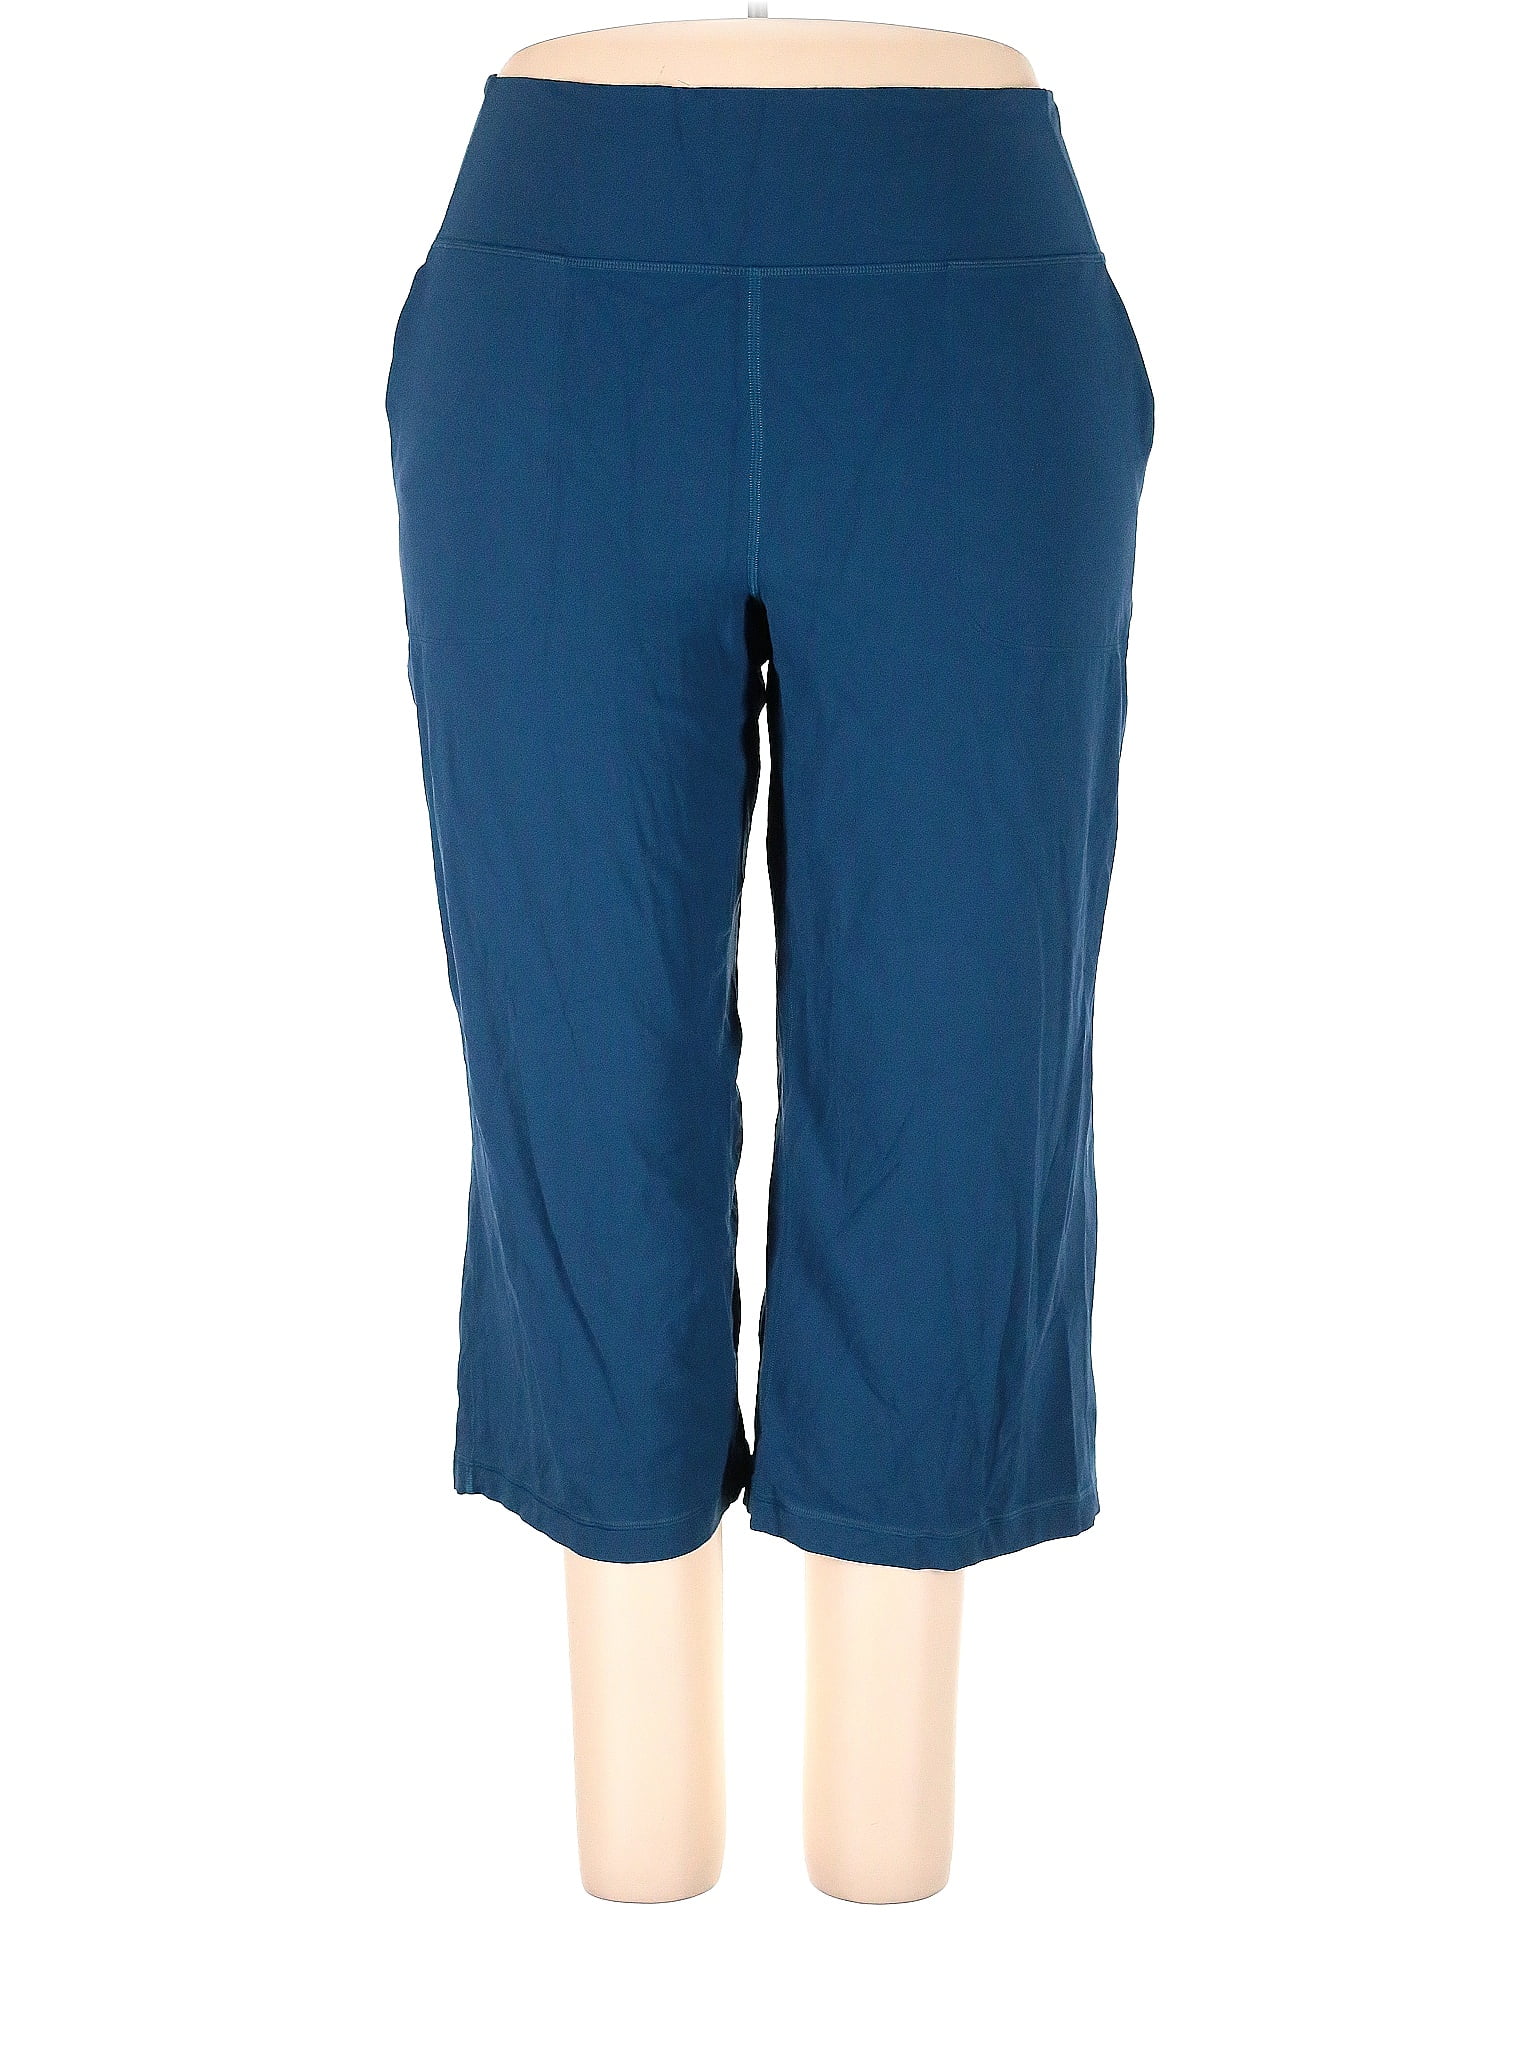 Lululemon Athletica Blue Active Pants Size 20 (Plus) - 57% off